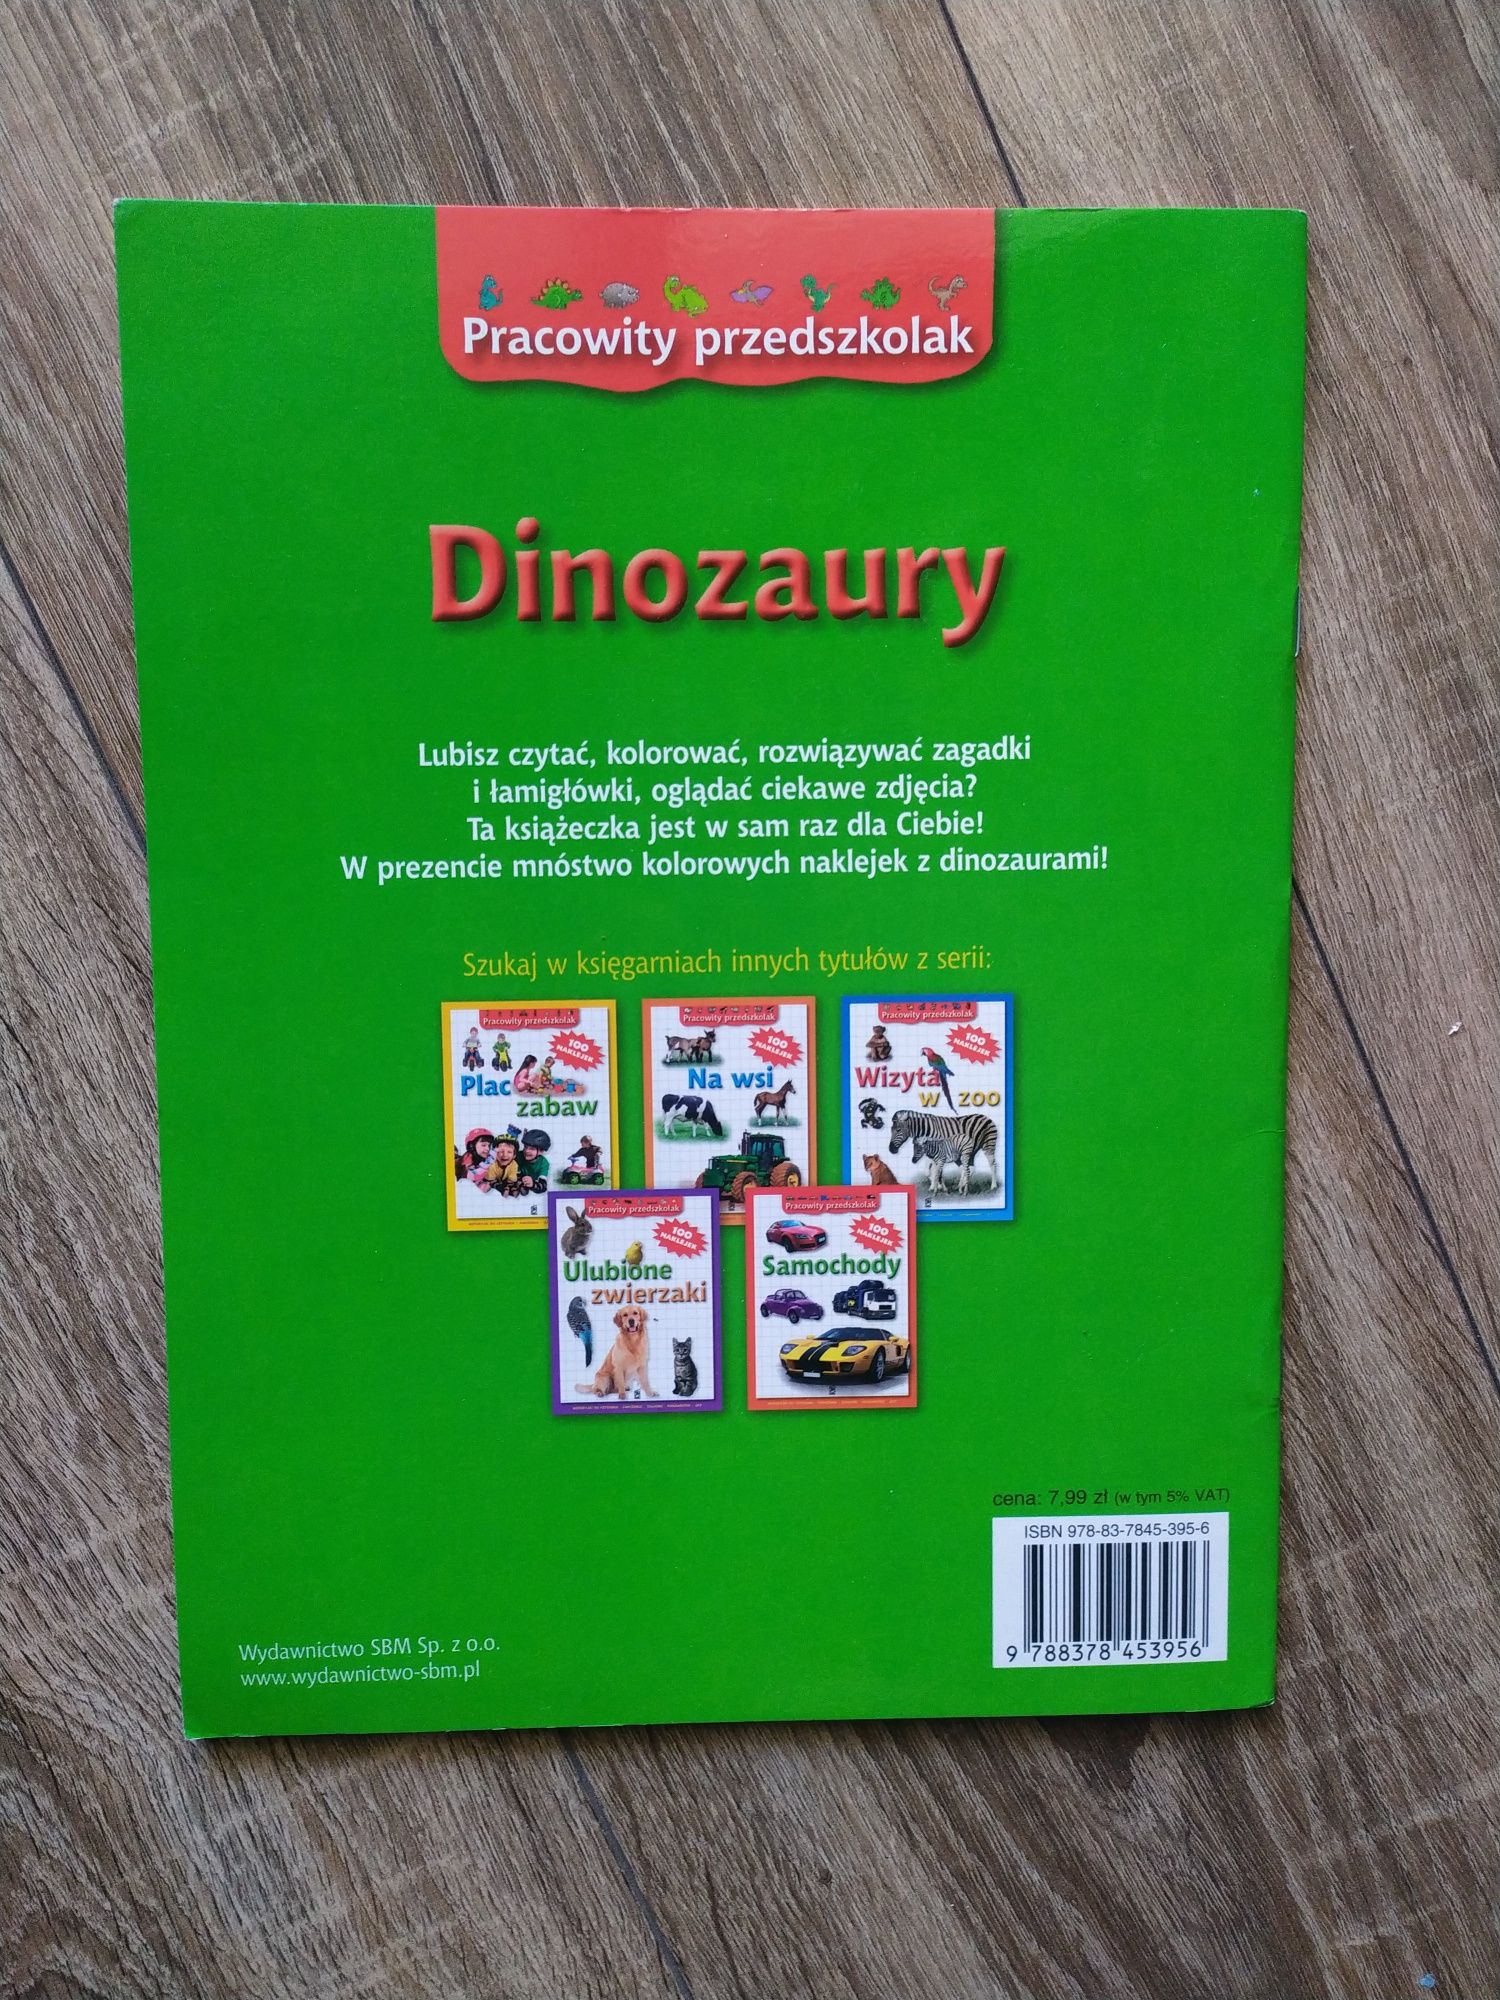 Dinozaury pracowity przedszkolak książka kolorowanka